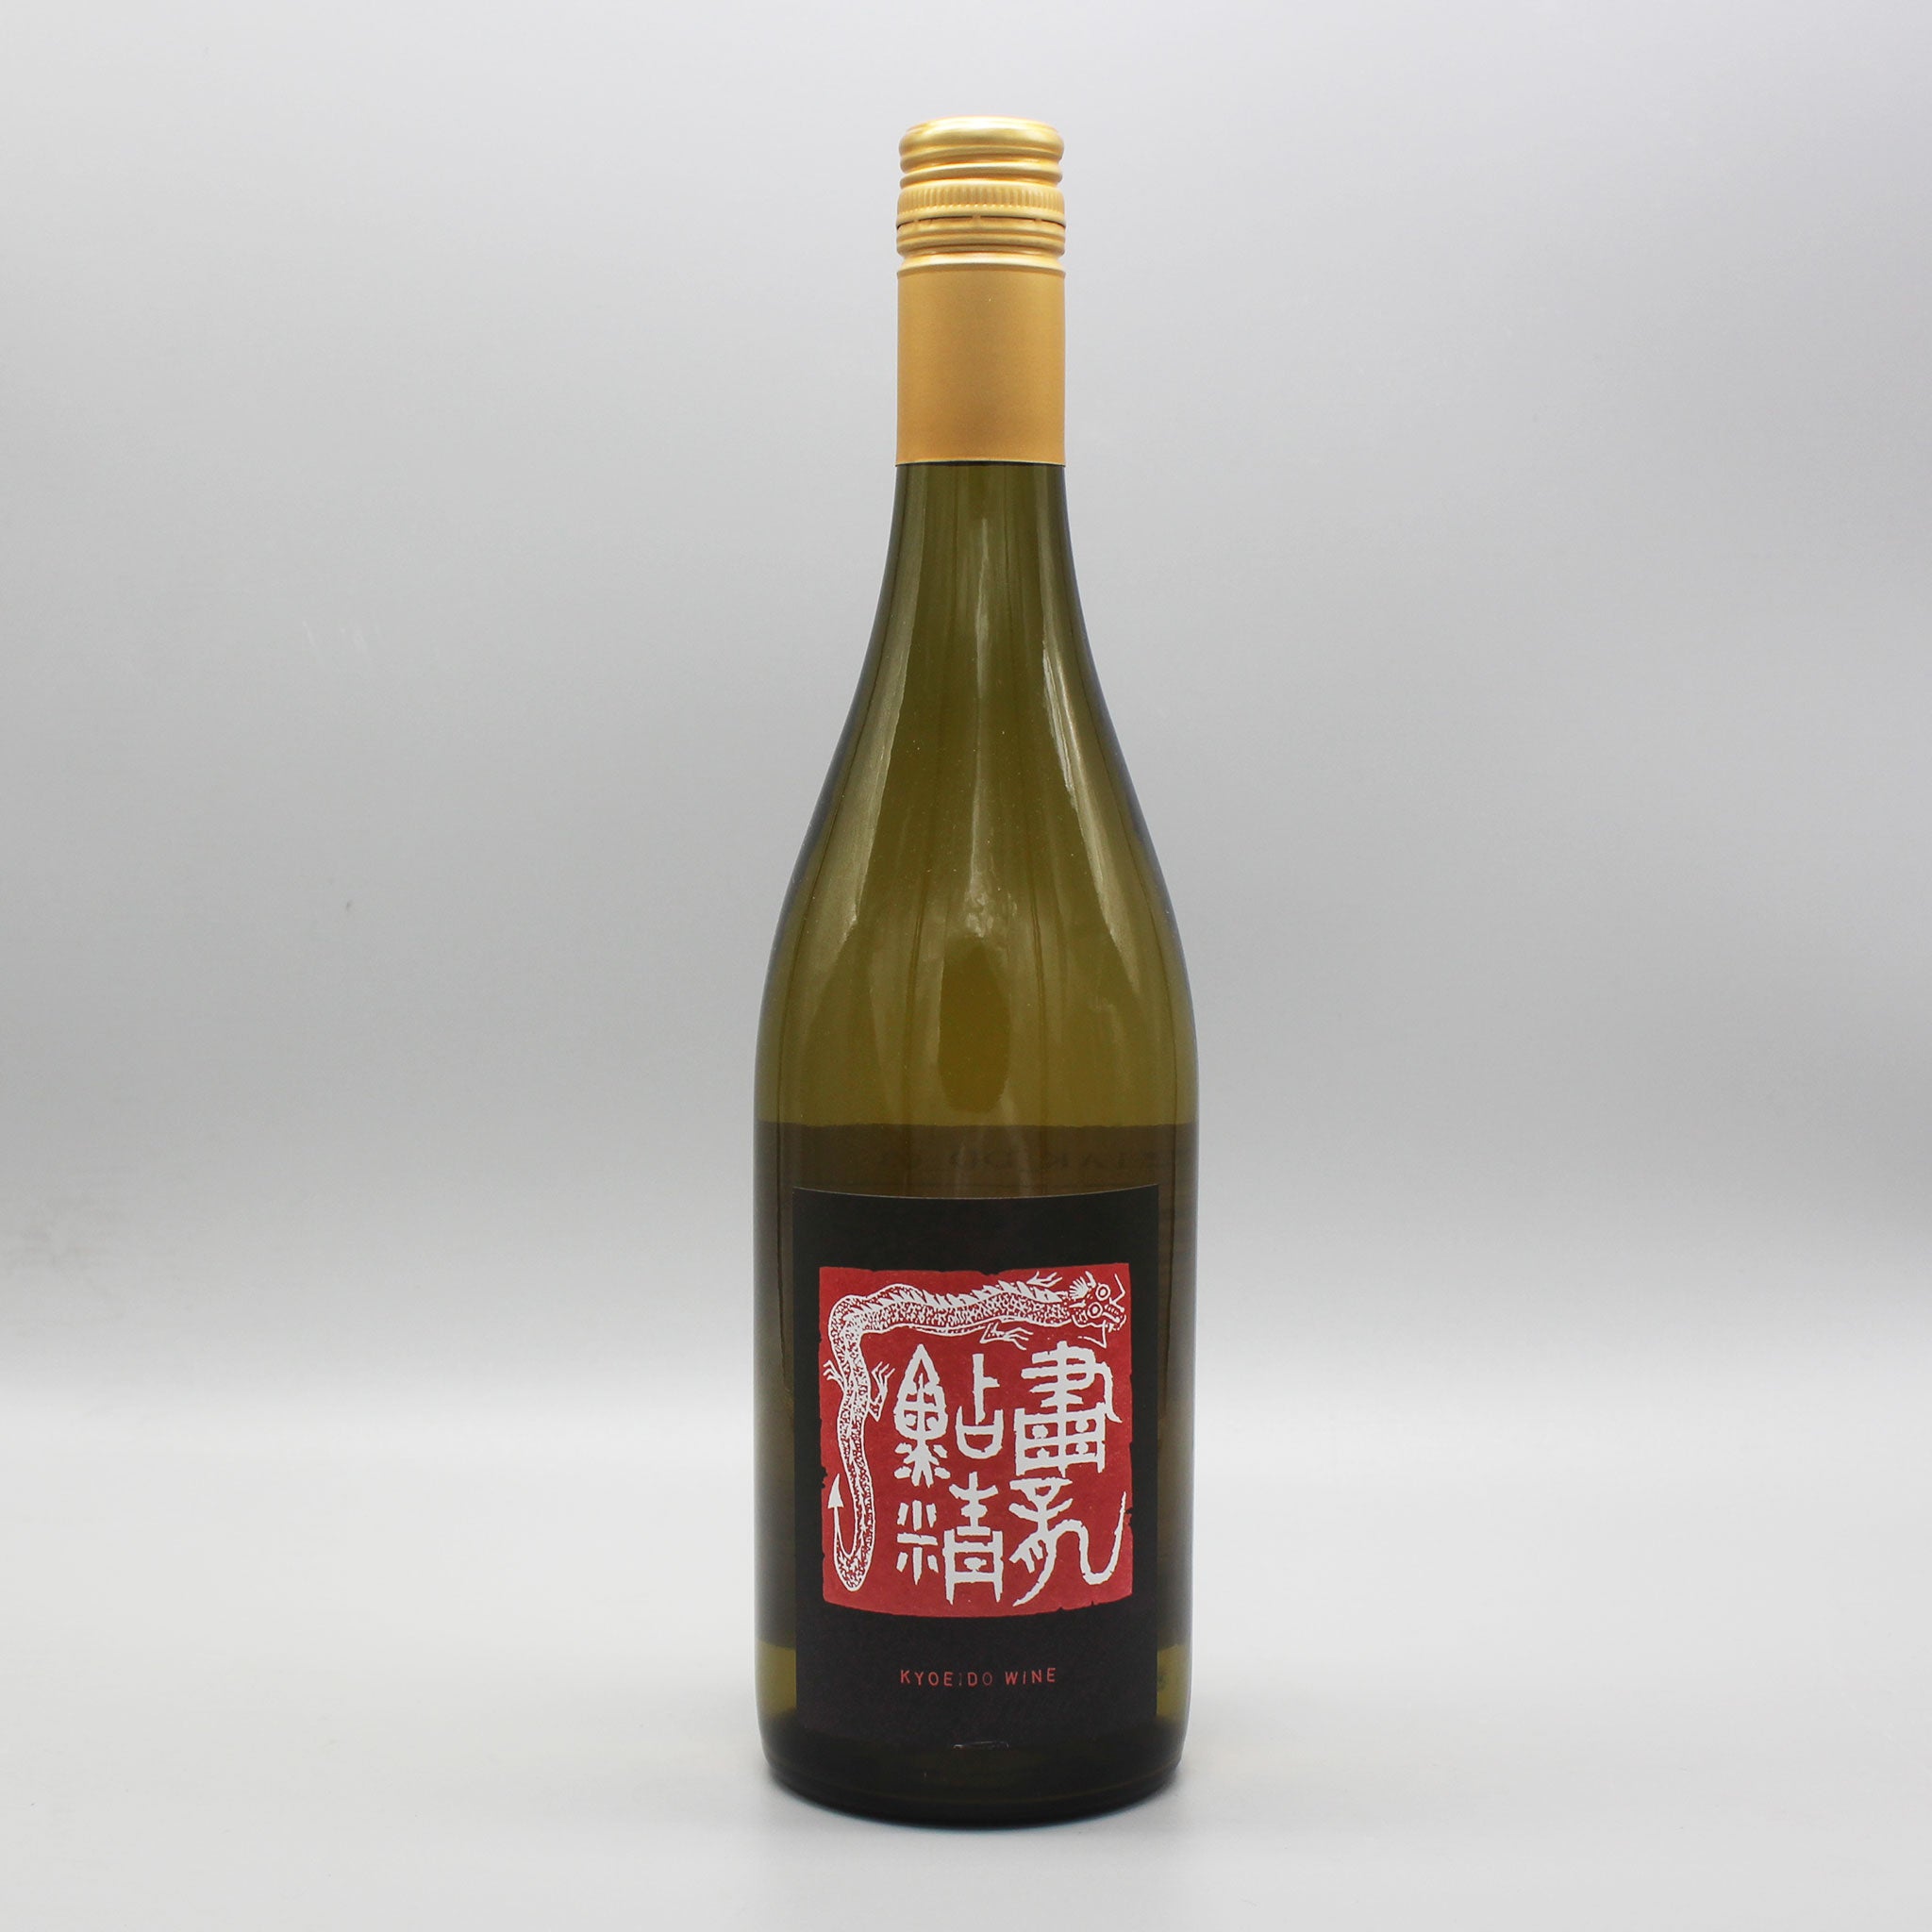 日本レアワイン5本セット BOW 共栄堂 ドメーヌポンコツ3本 - 酒